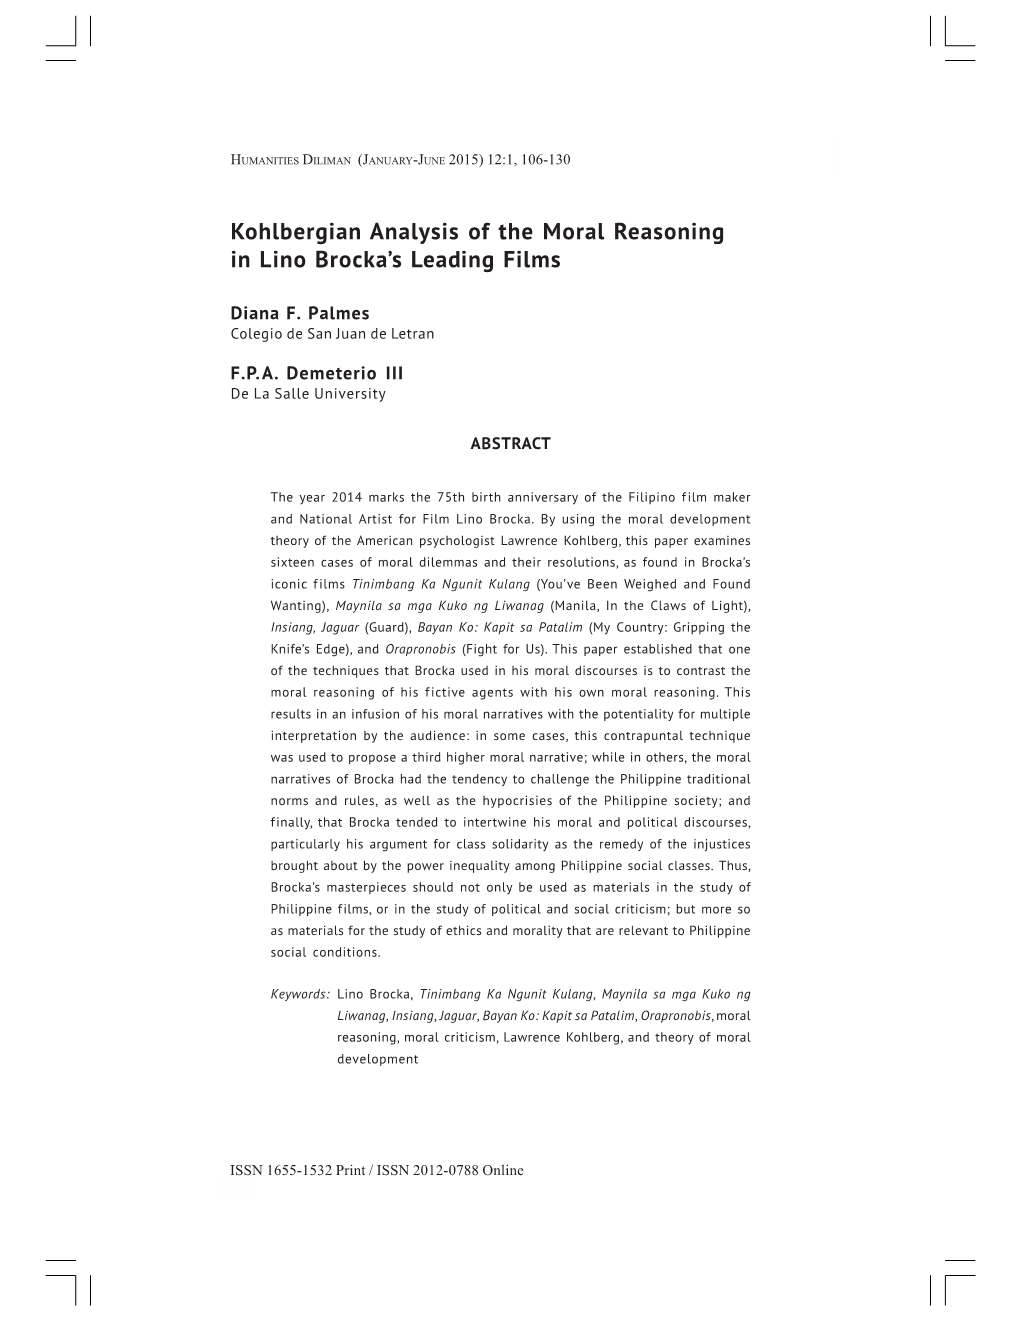 Kohlbergian Analysis of the Moral Reasoning in Lino Brocka's